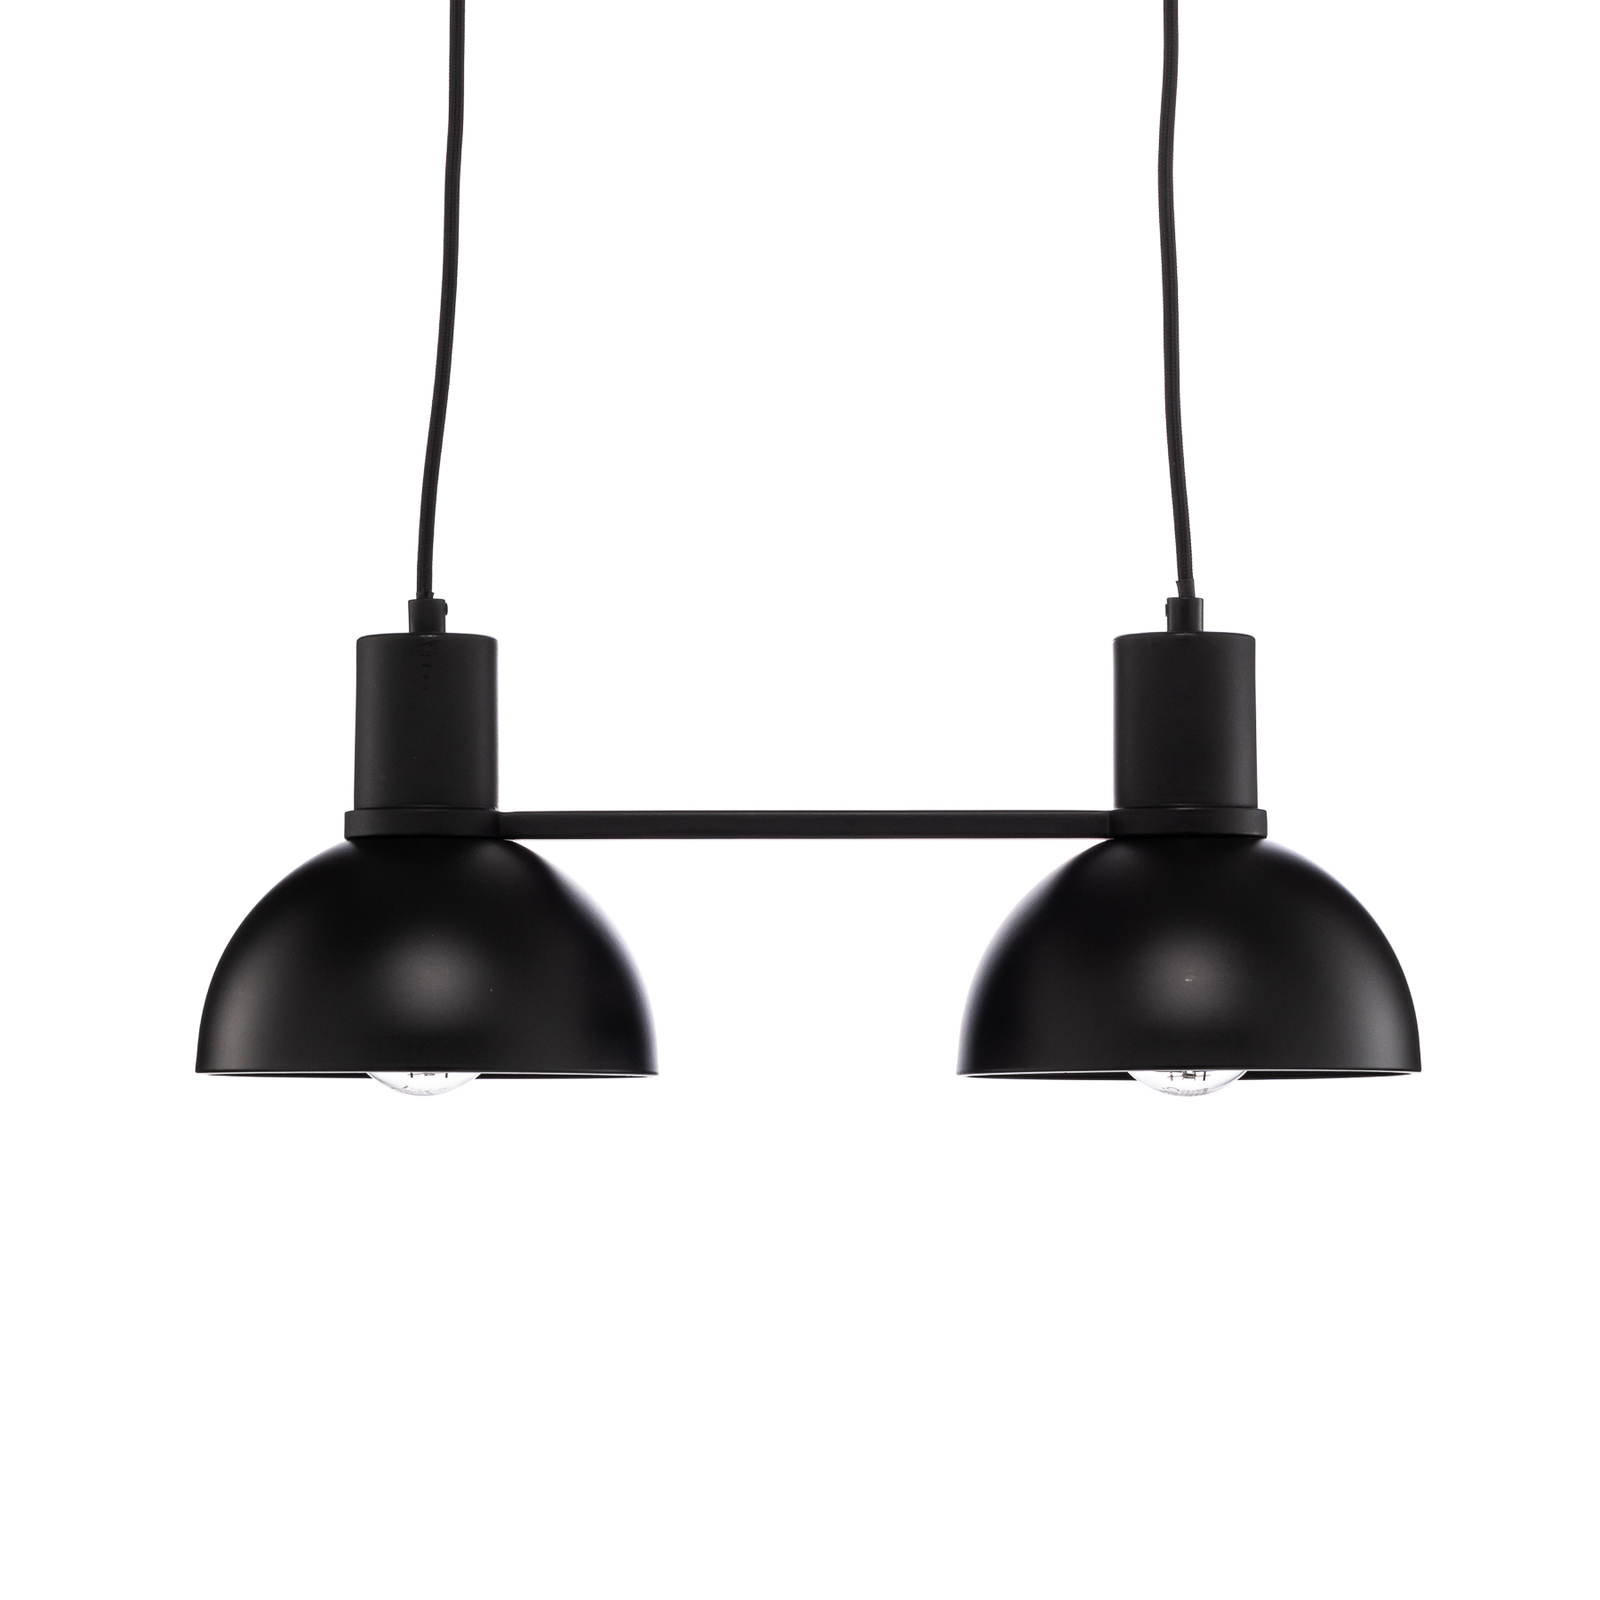 Lucande Mostrid závěsné světlo, černá, dva zdroje